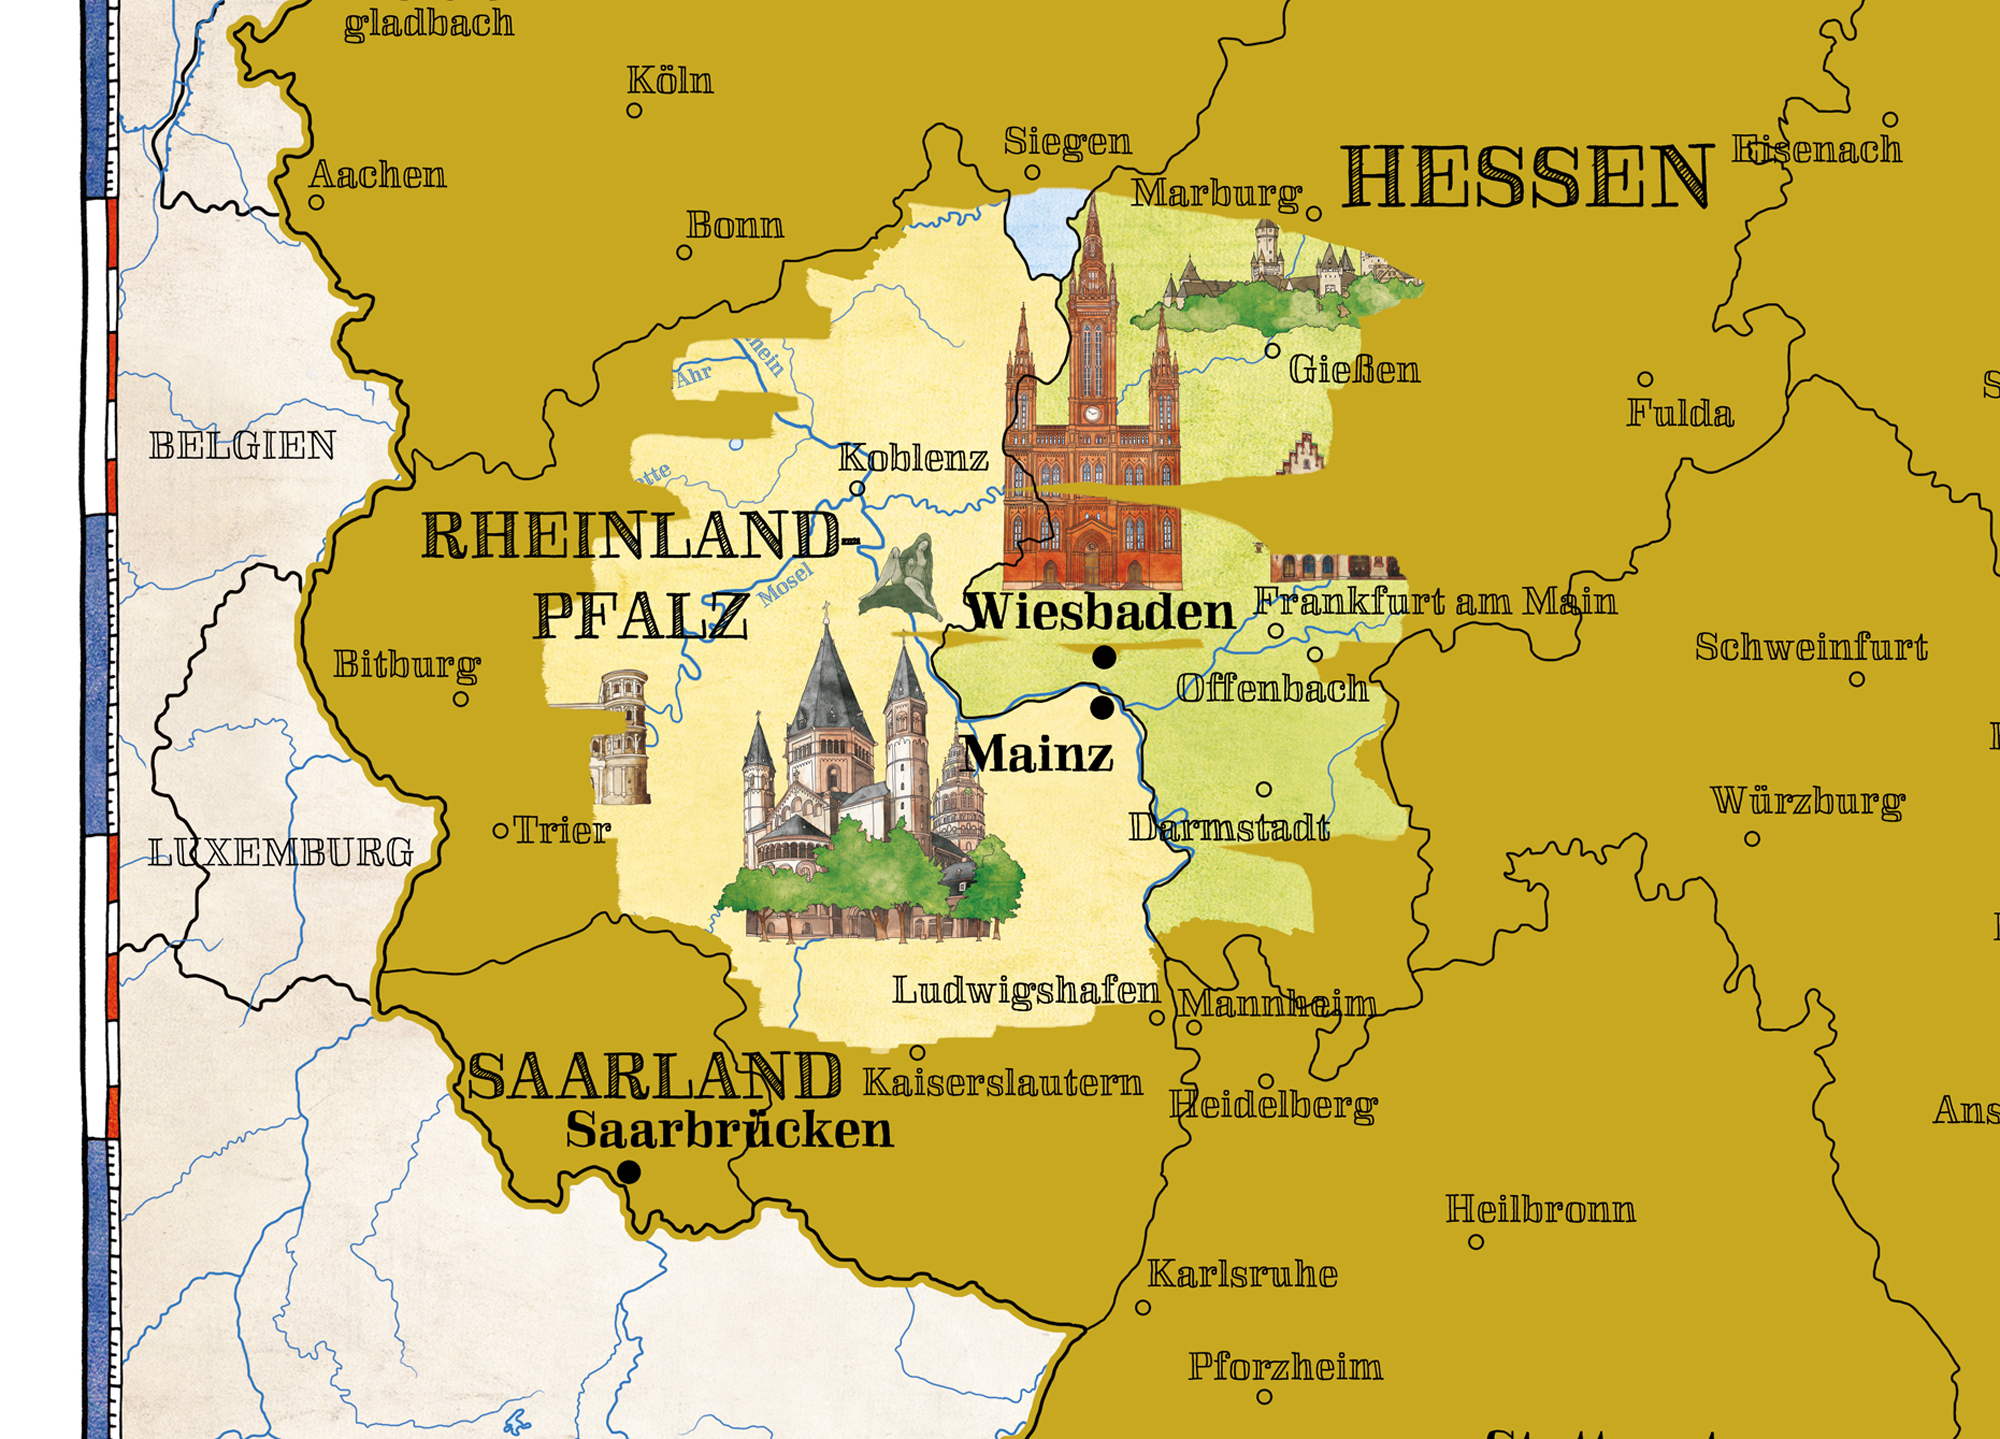 Politisch Landkarten - Rubbelkarte Deutschland